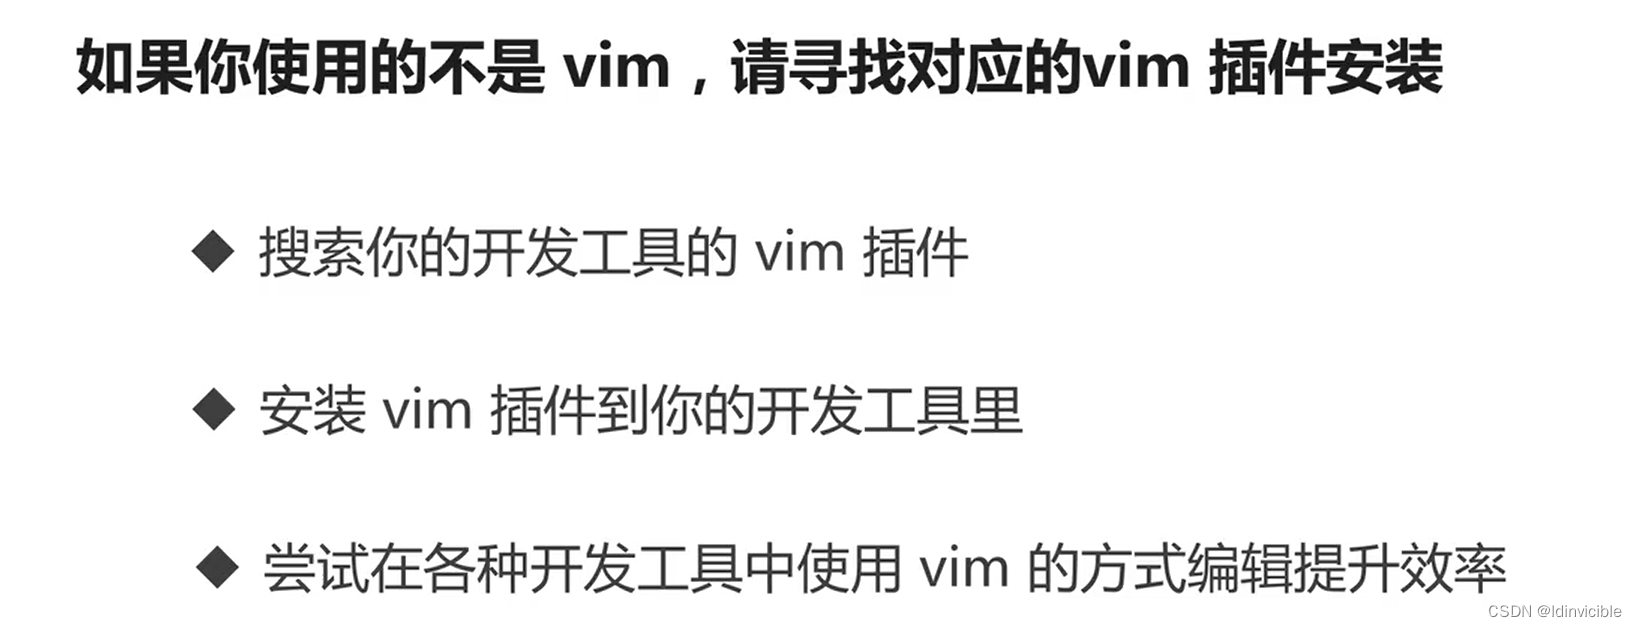 【VIM】VIM配合使用的工具_编辑器_09